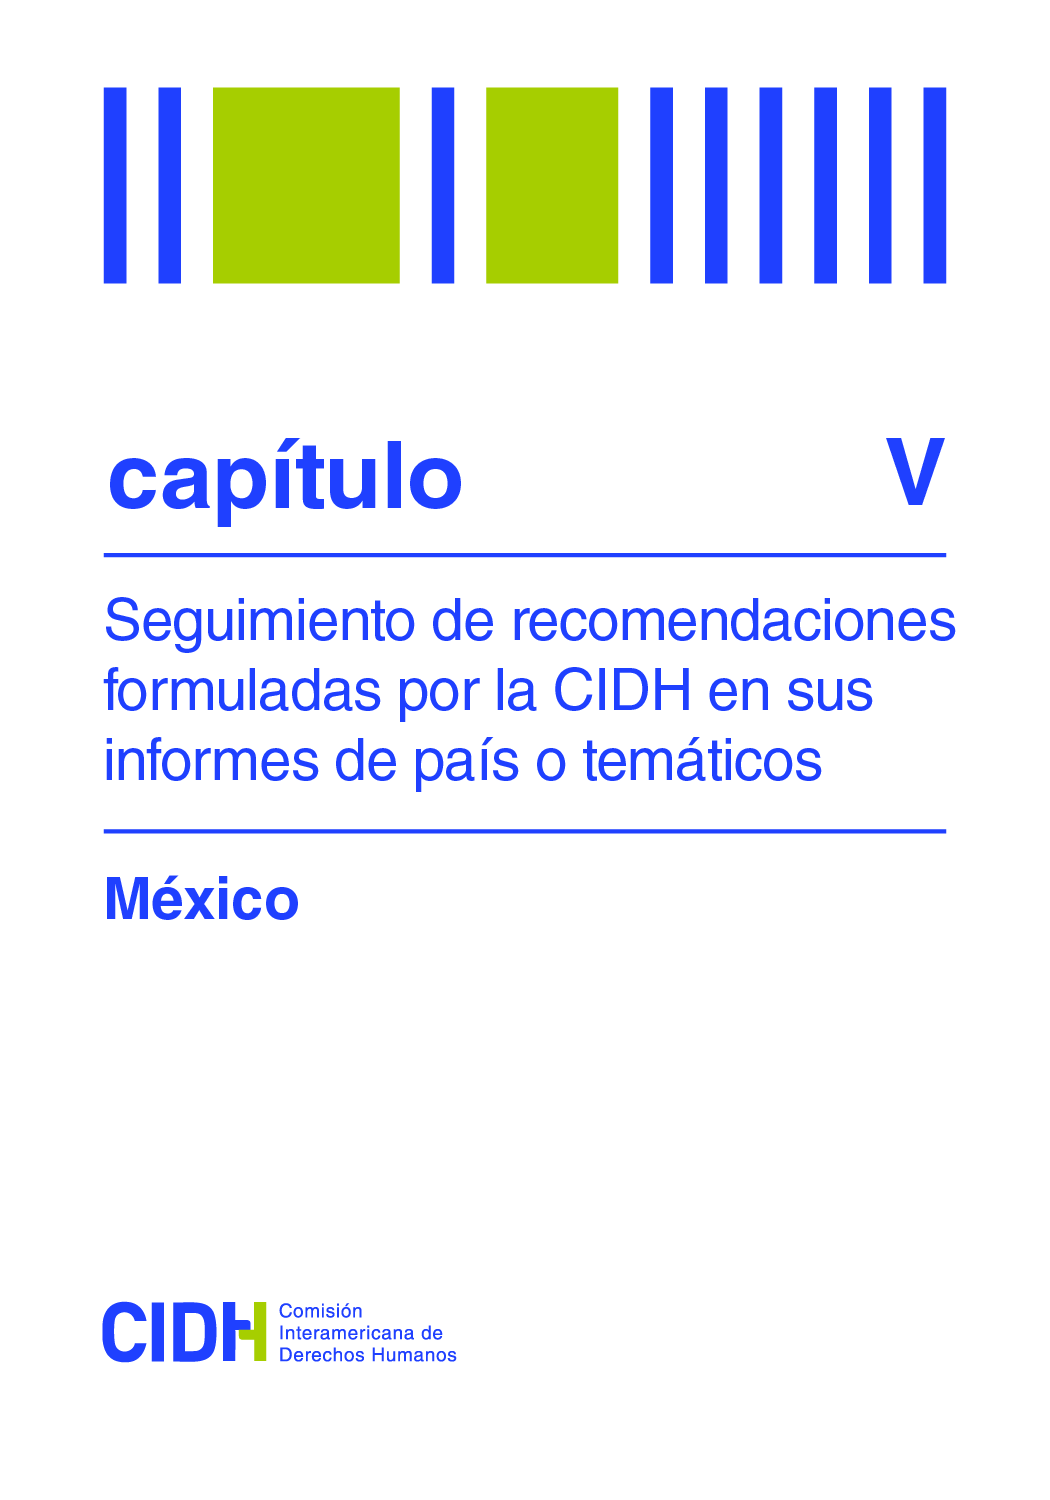 Sexto informe de seguimiento de las recomendaciones formuladas por la CIDH en el Informe sobre la situación de Derechos Humanos en México